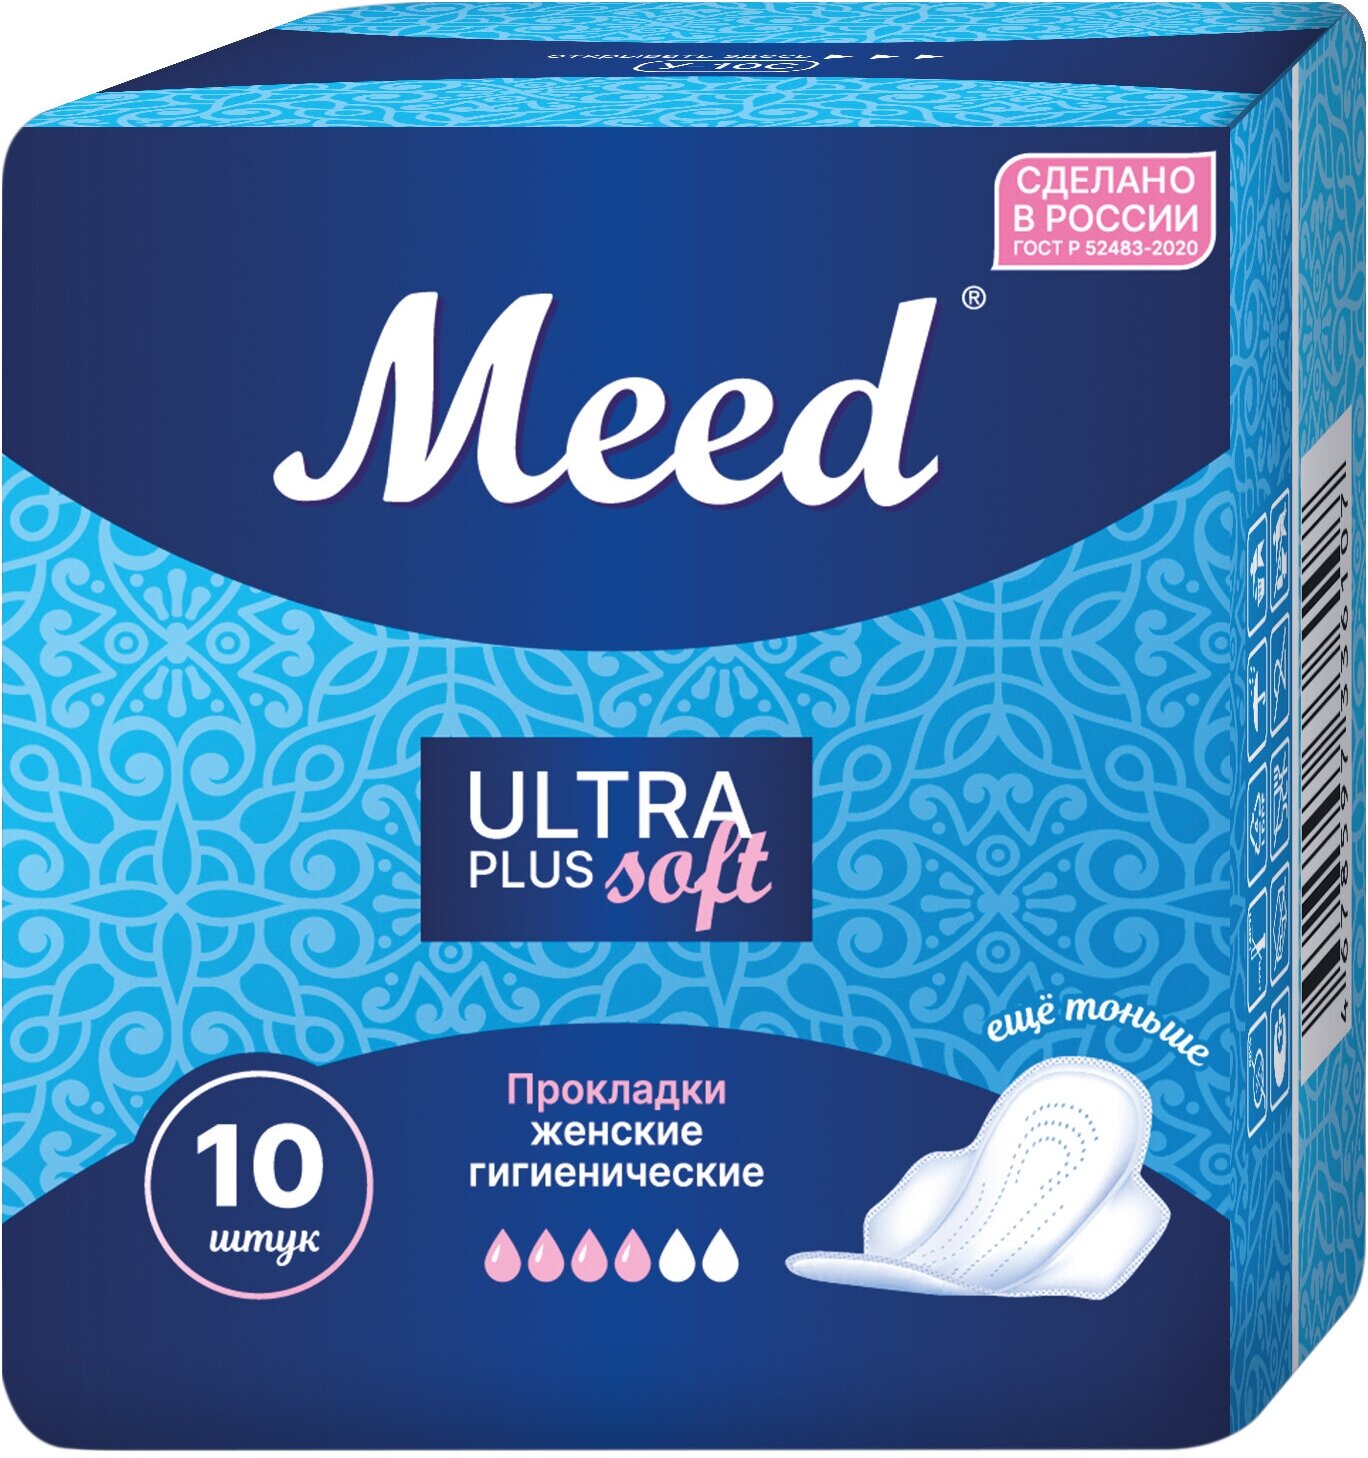 Женские прокладки MEED Ultra Plus Soft (10 шт.), гигиенические, с крылышками, 4 капли